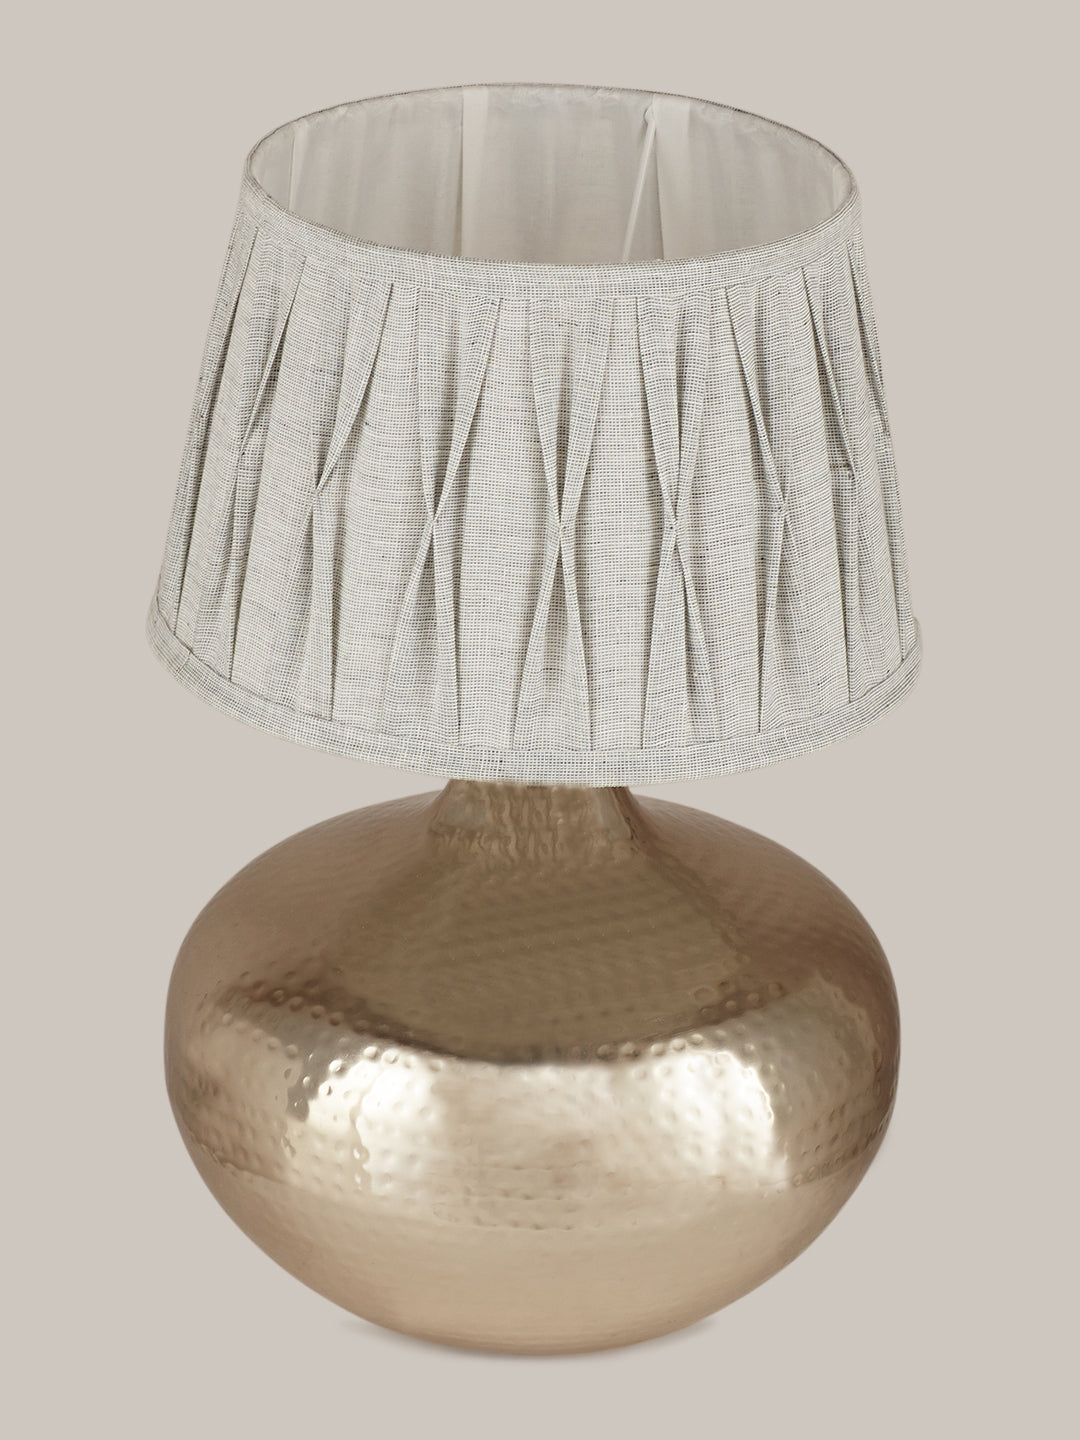 Detec Berthold chrome metal table lamp